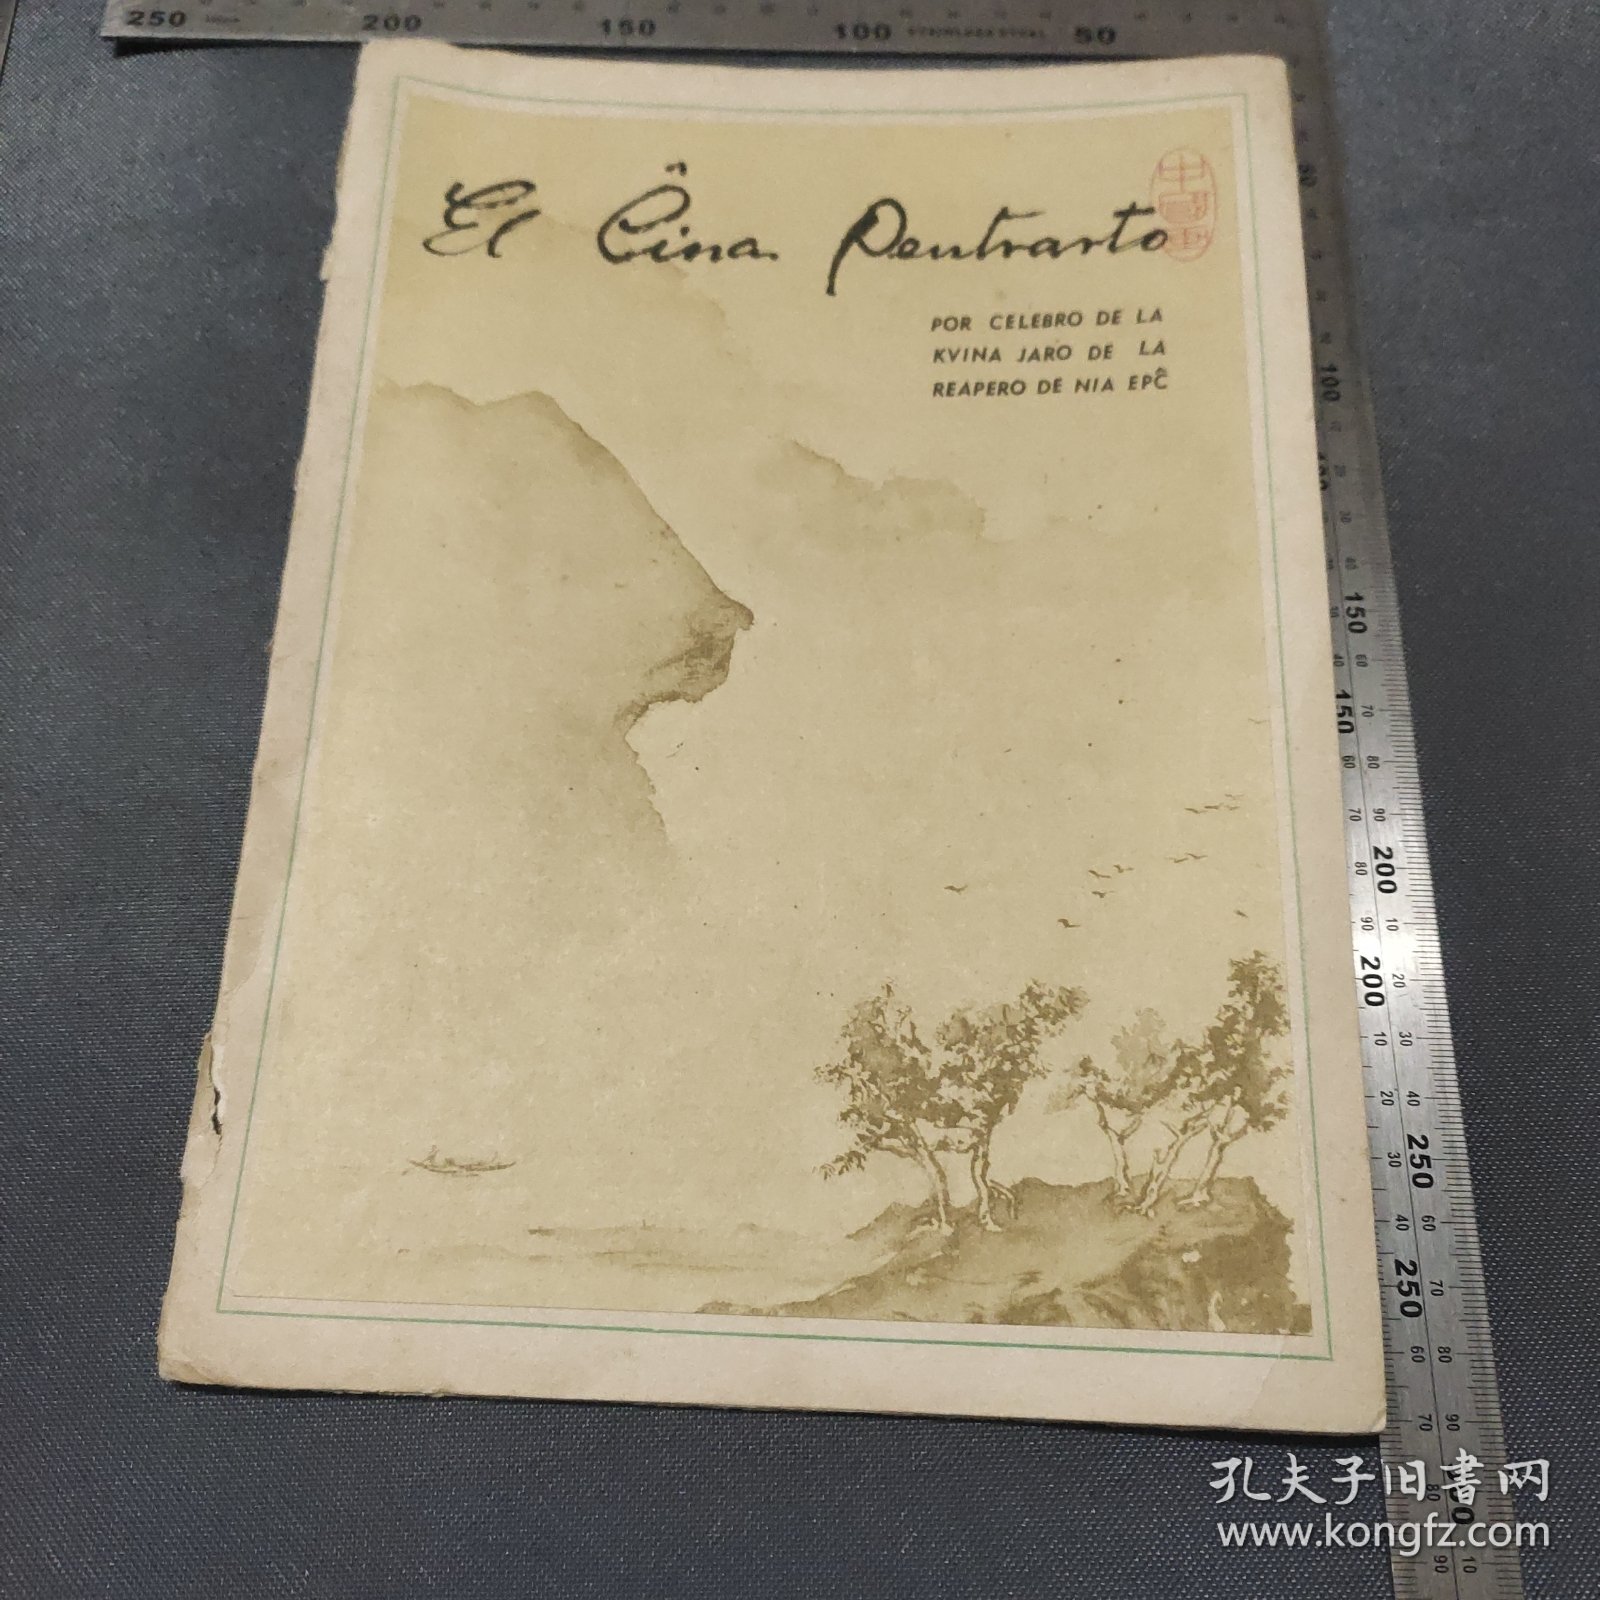 1962年《中国画》齐白石吴作人等名家绘画活页老画片15张